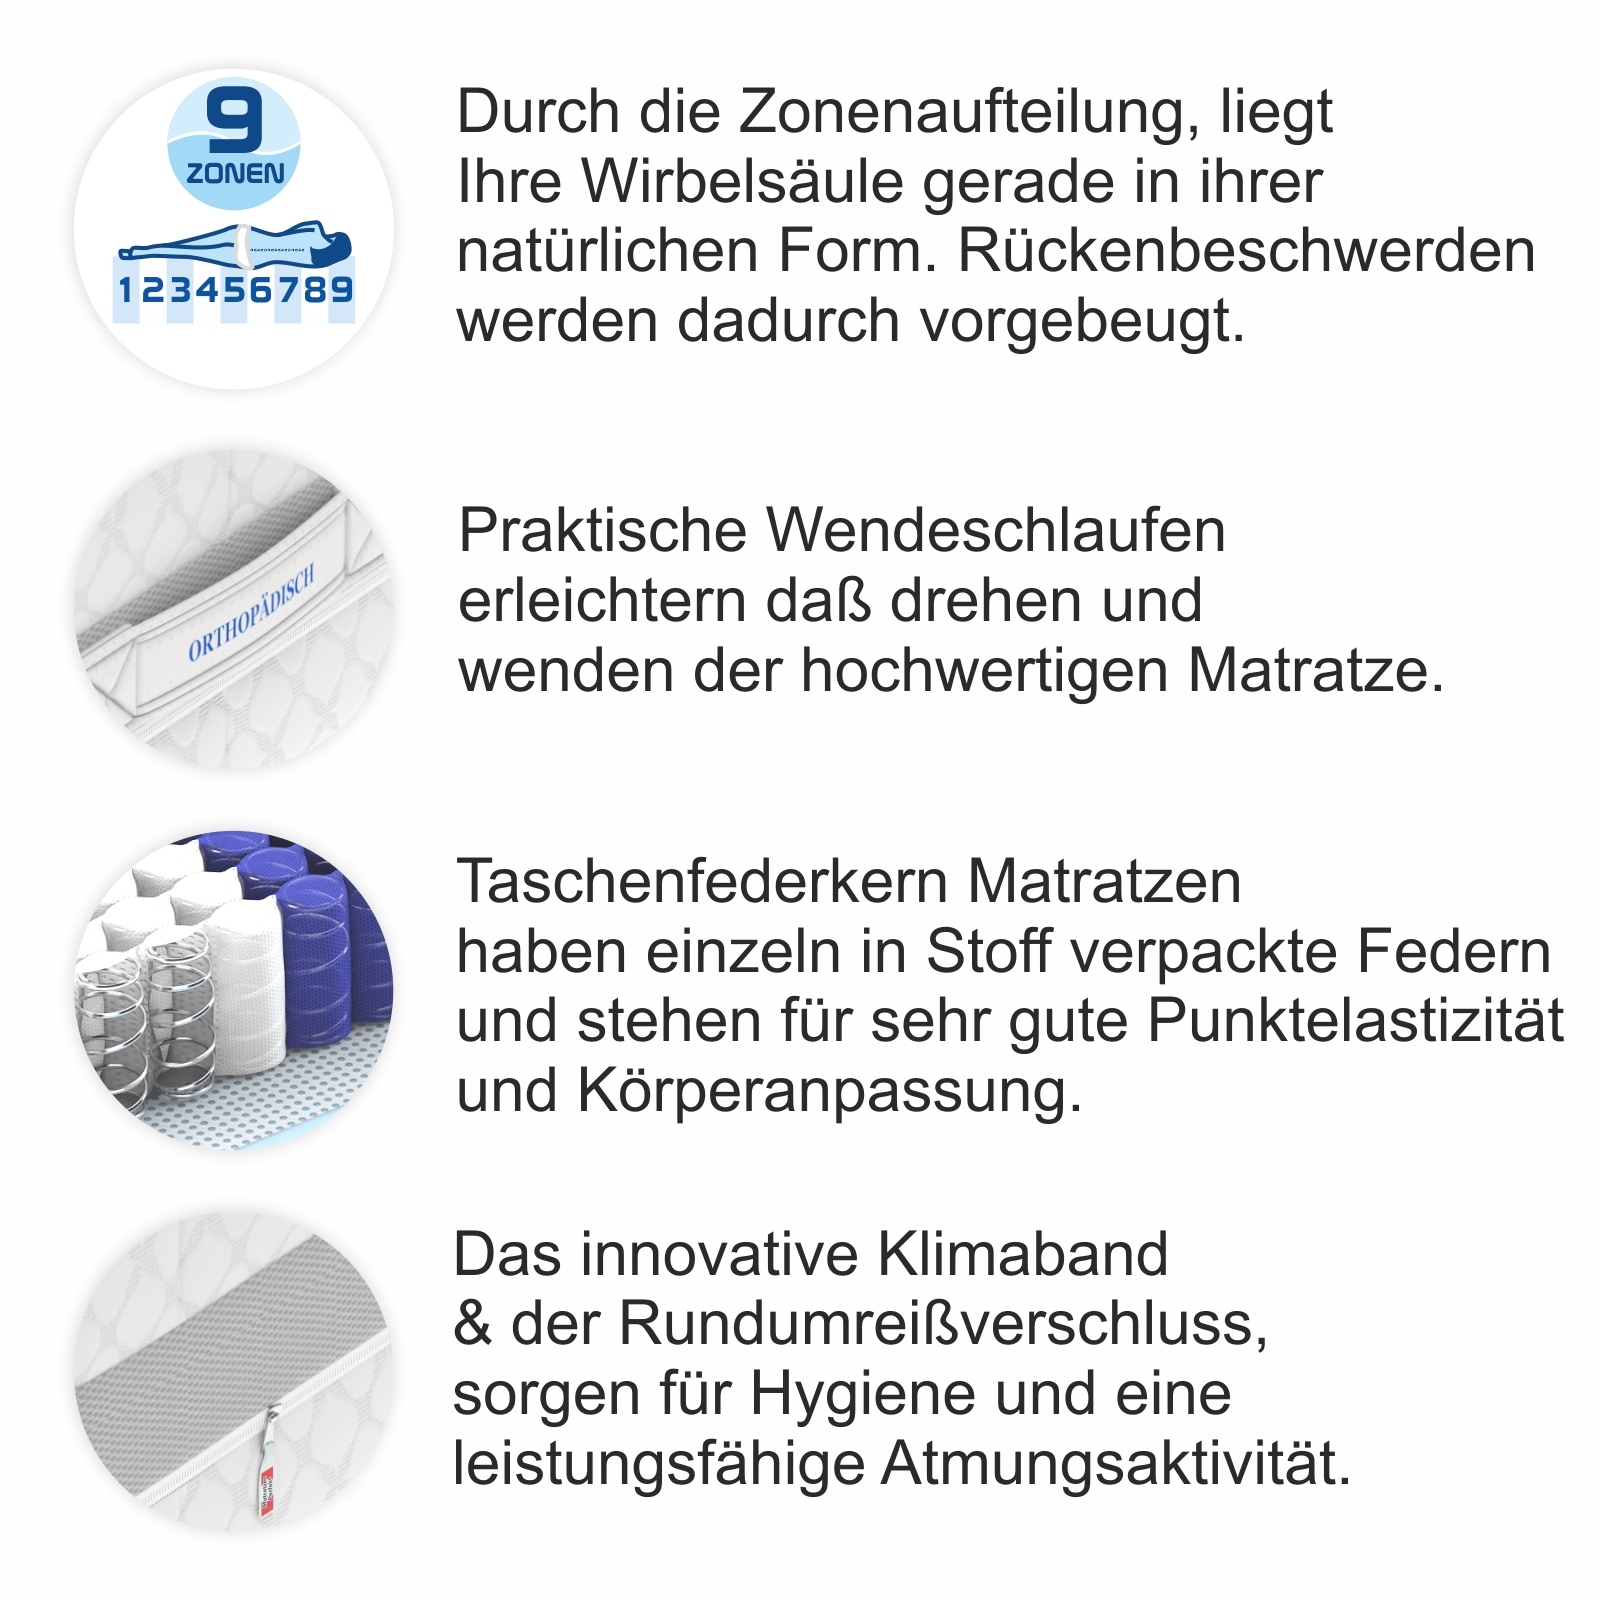 Taschenfedekrernmatratze Hamburg Details